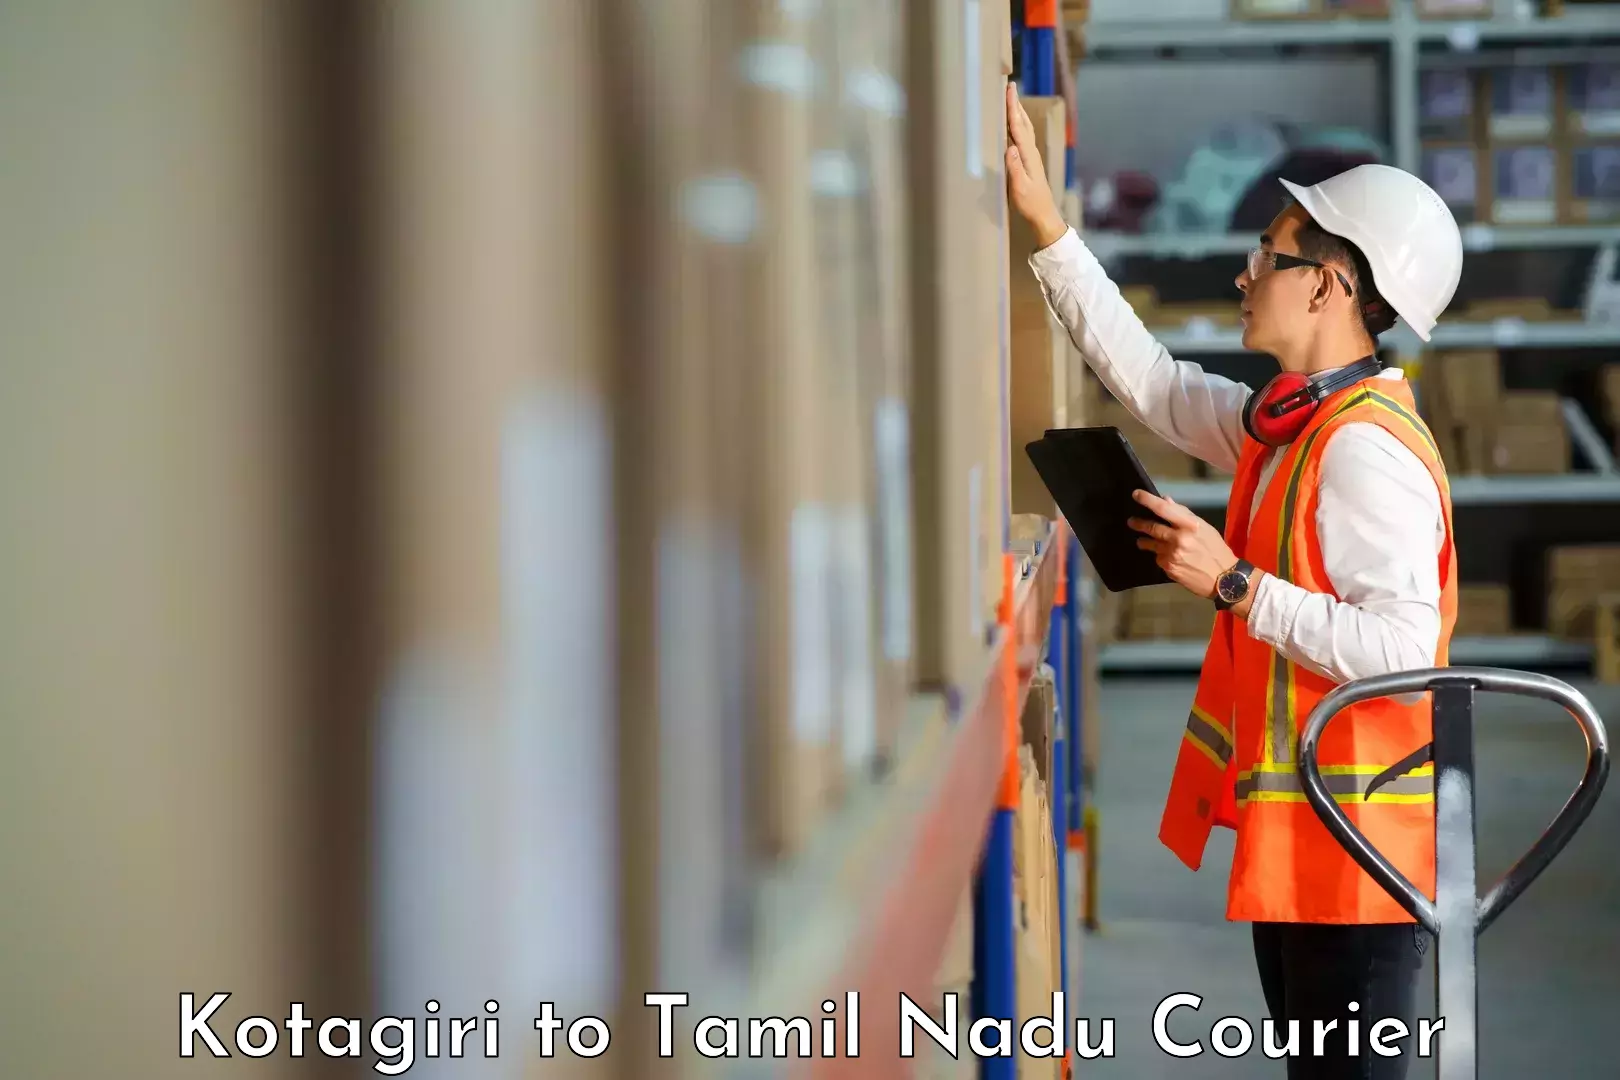 Cargo delivery service Kotagiri to Chennai Port